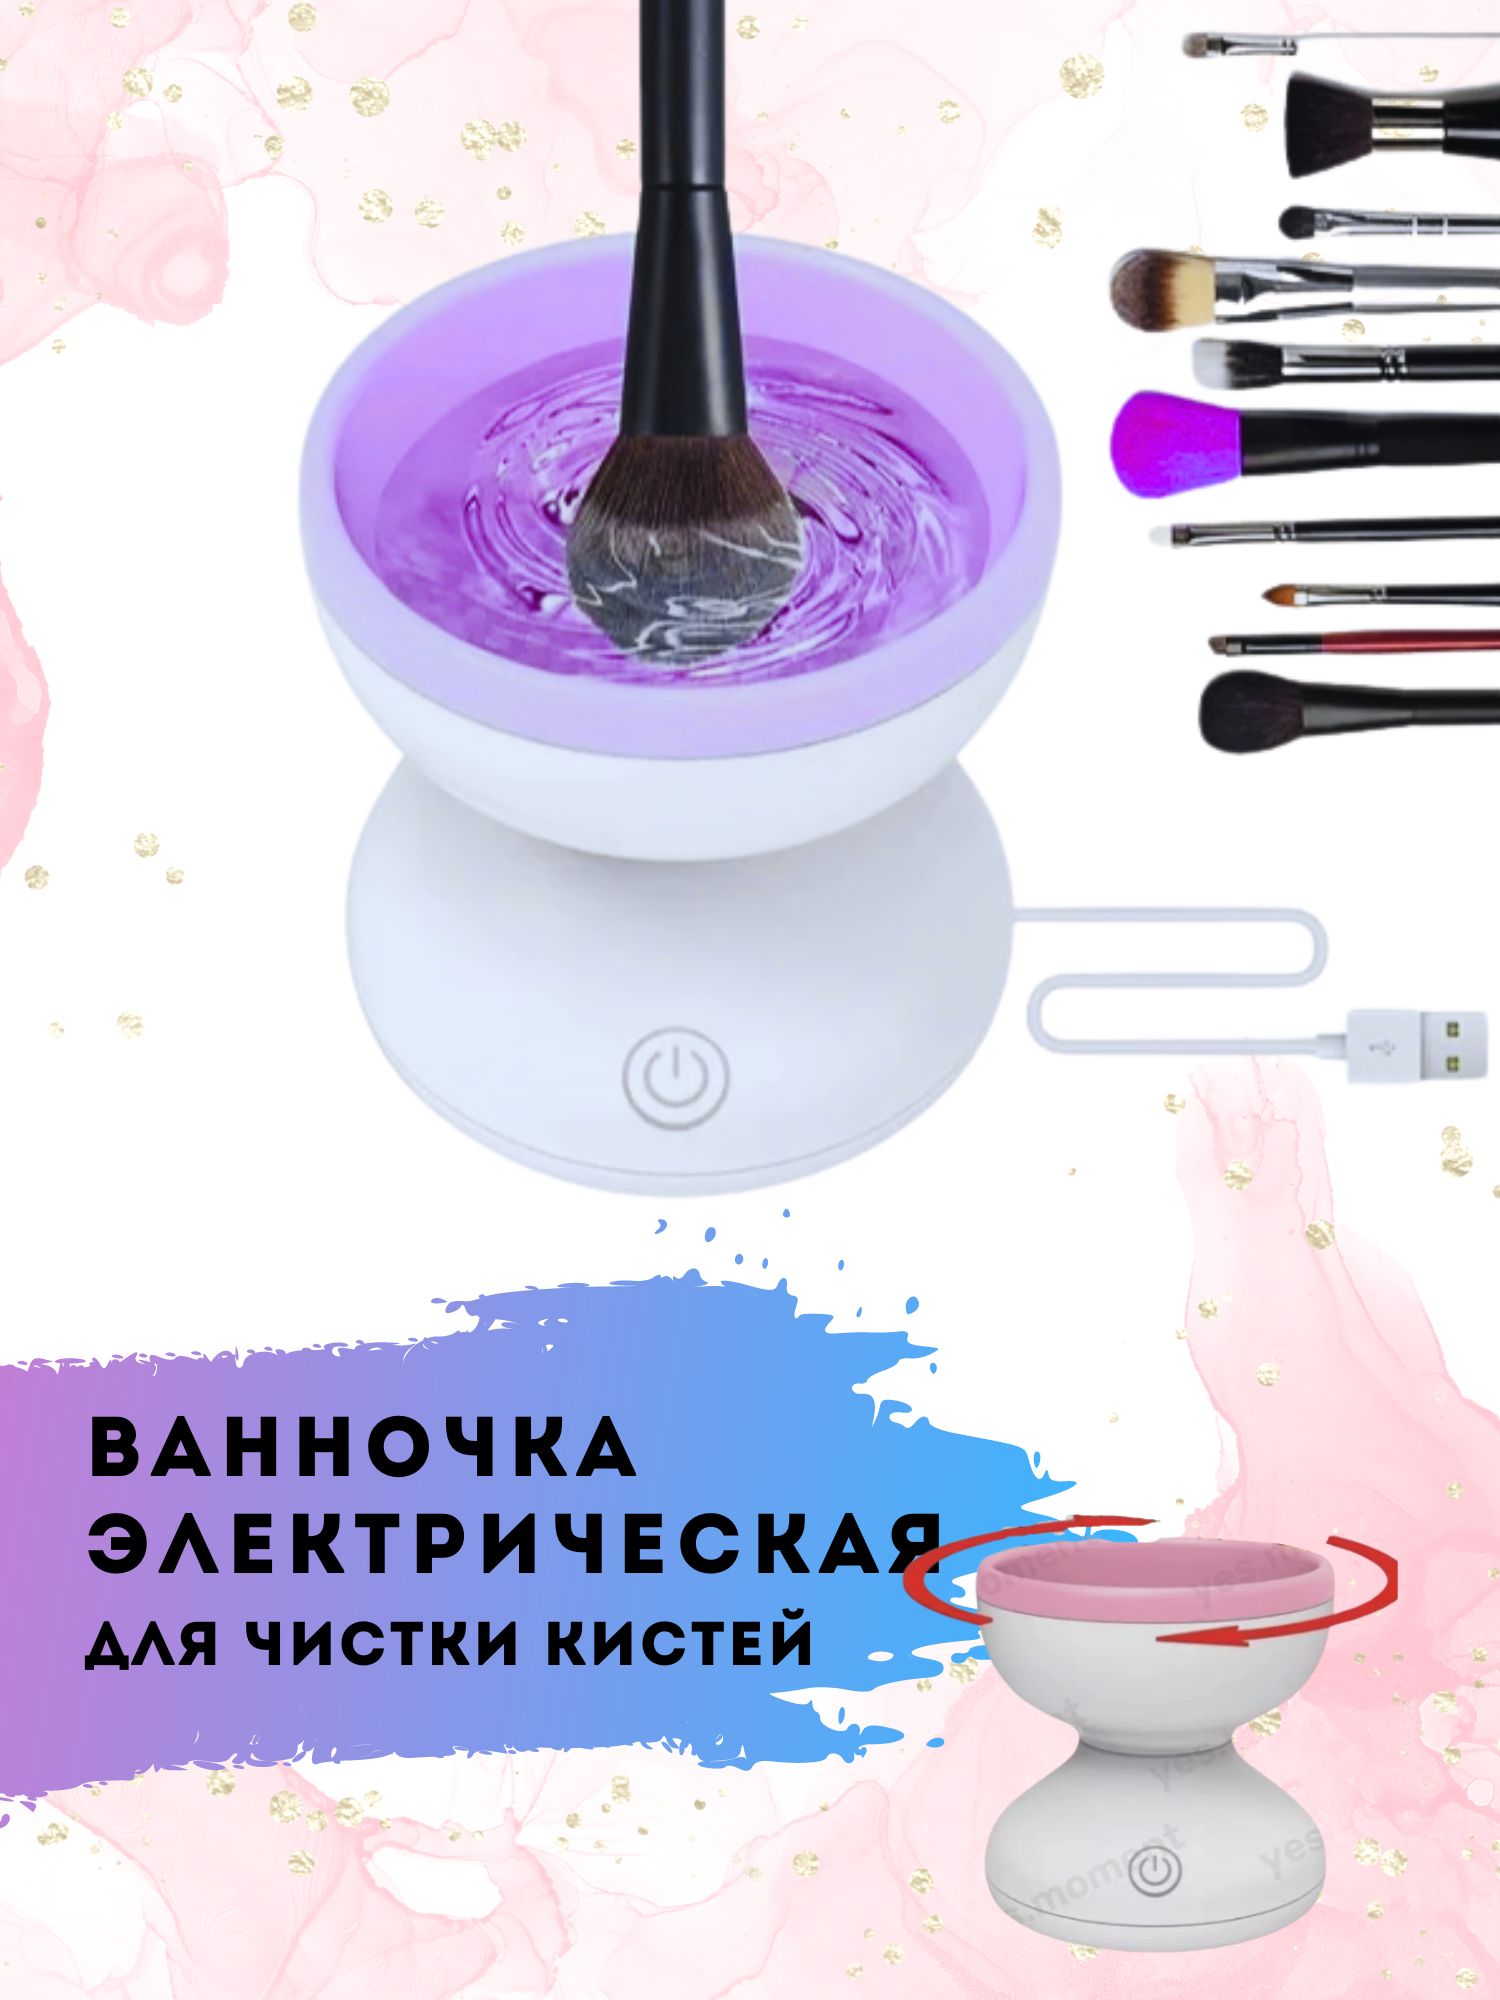 Очиститель для кистей XPX электрический фиолетовый диаметр 8.8 см складная ванночка коврик lolocandy для мытья очистки кистей спонжей